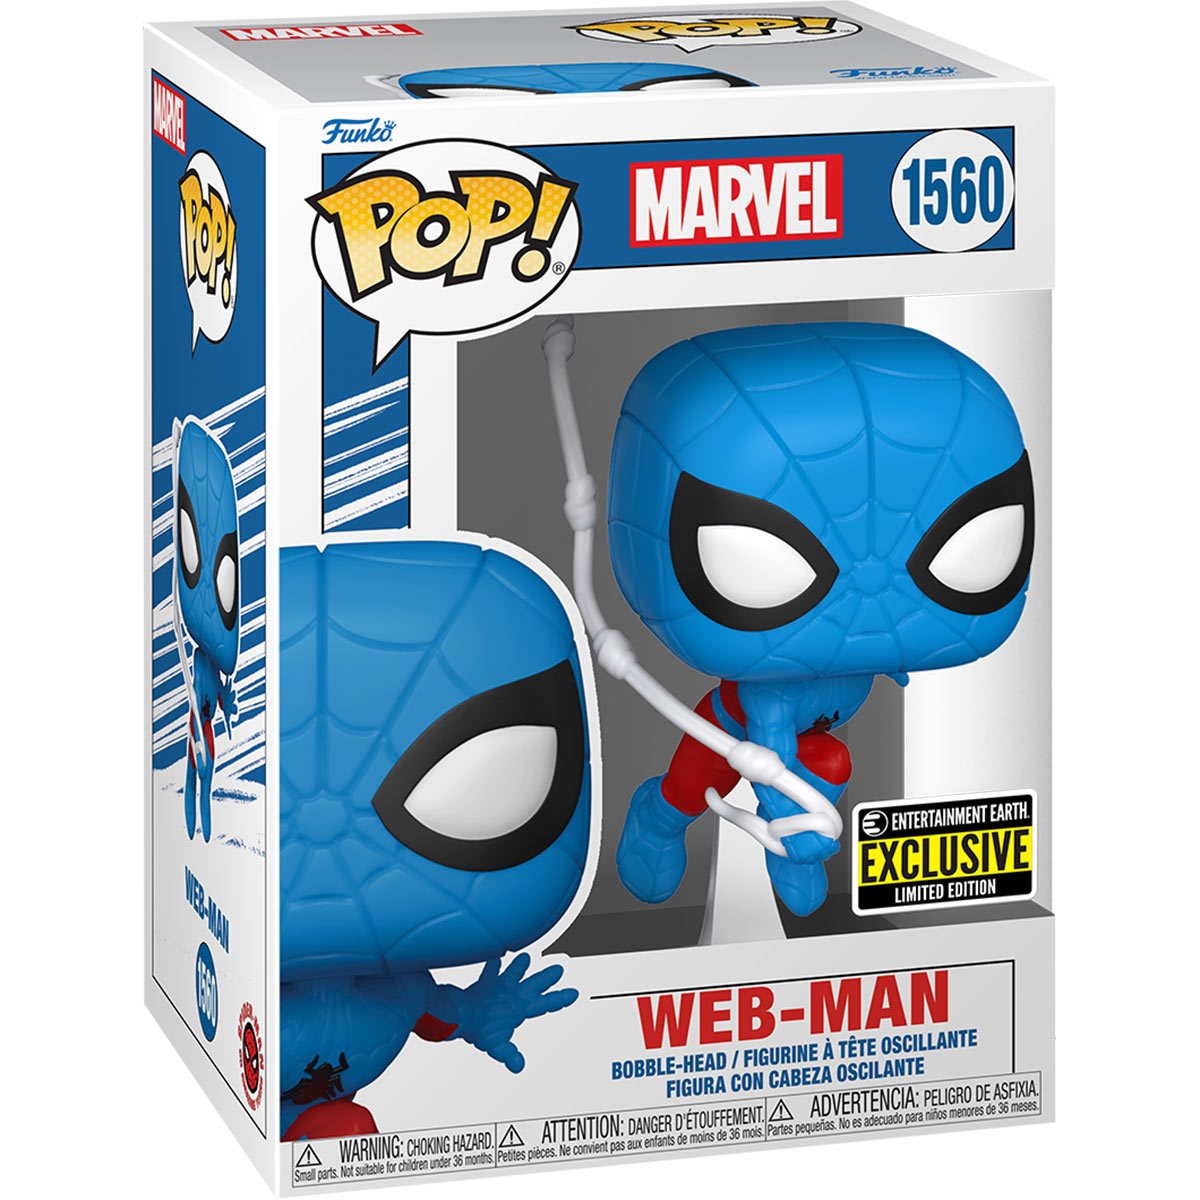 Spider-Man Web-Man Funko Pop! Vinyl Figure #1560 - EE Exclusive